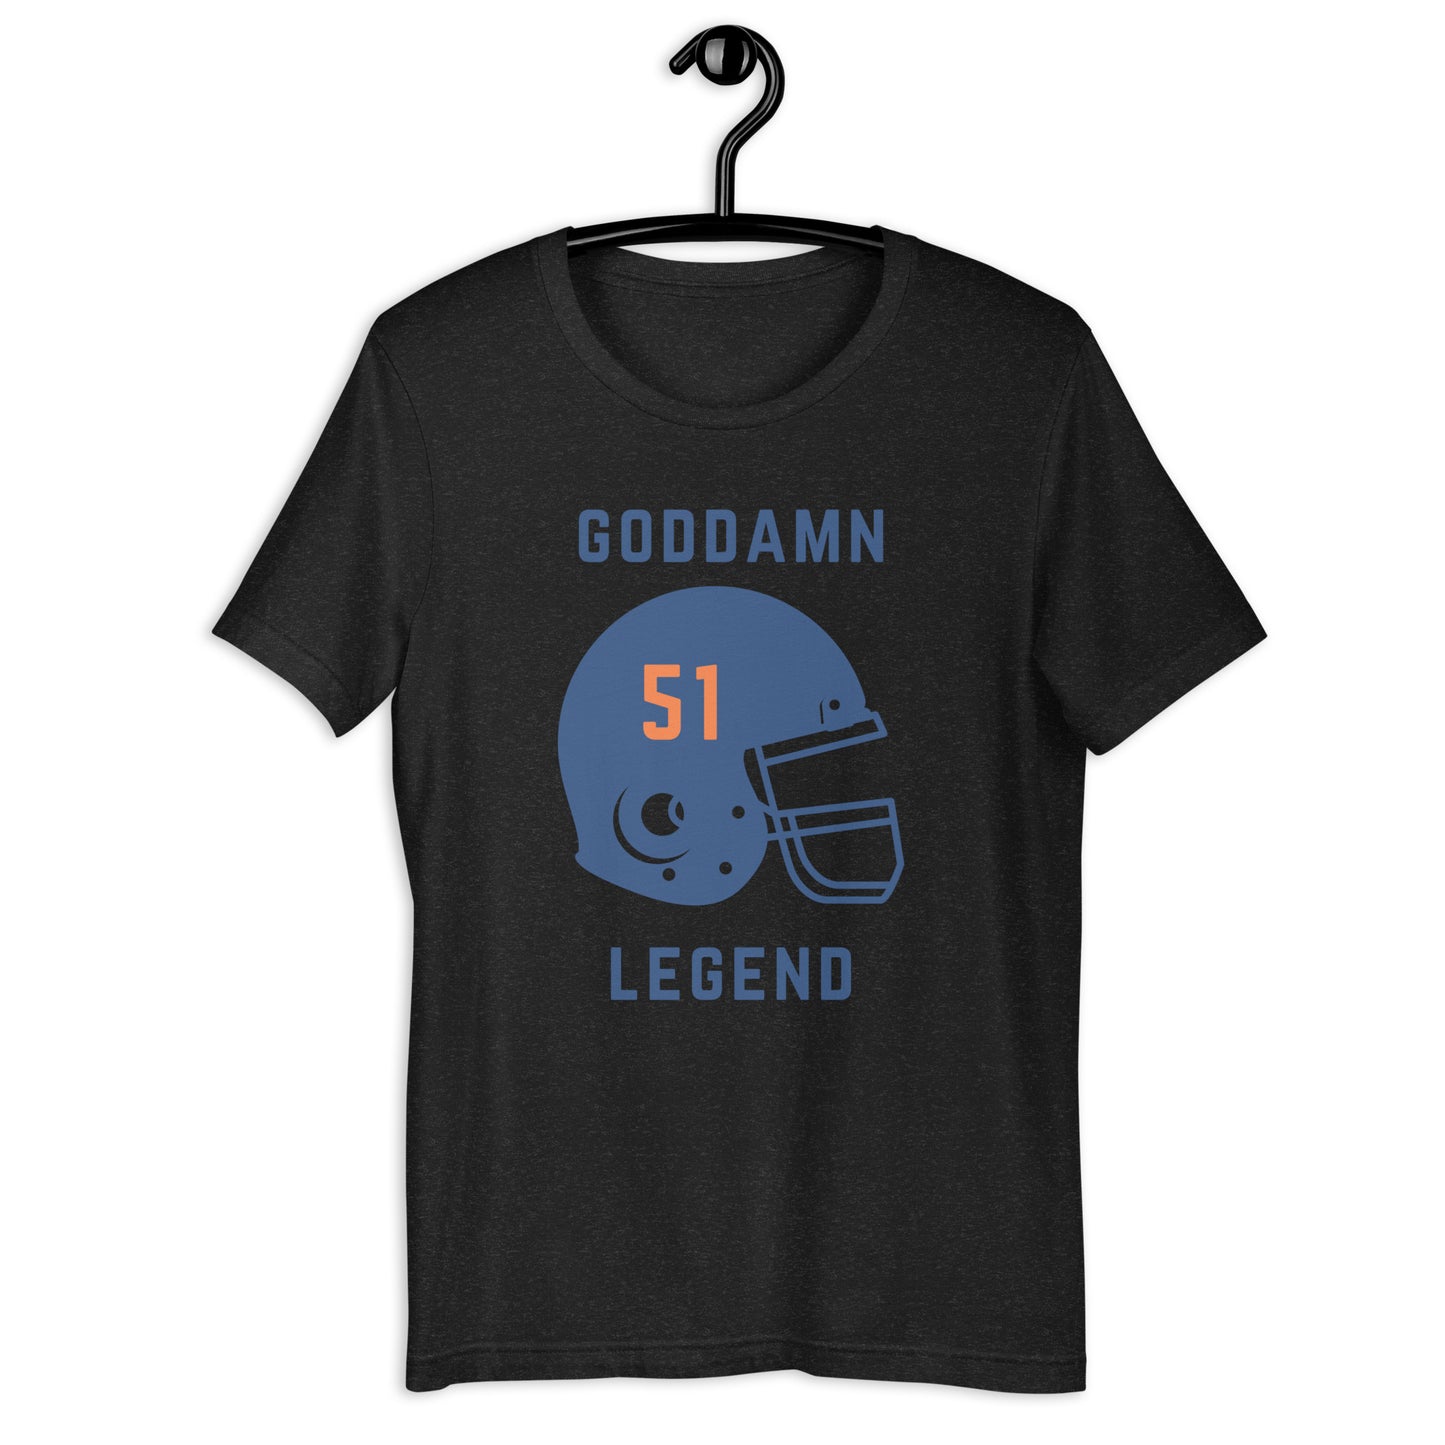 Goddamn Legend #51 TShirt